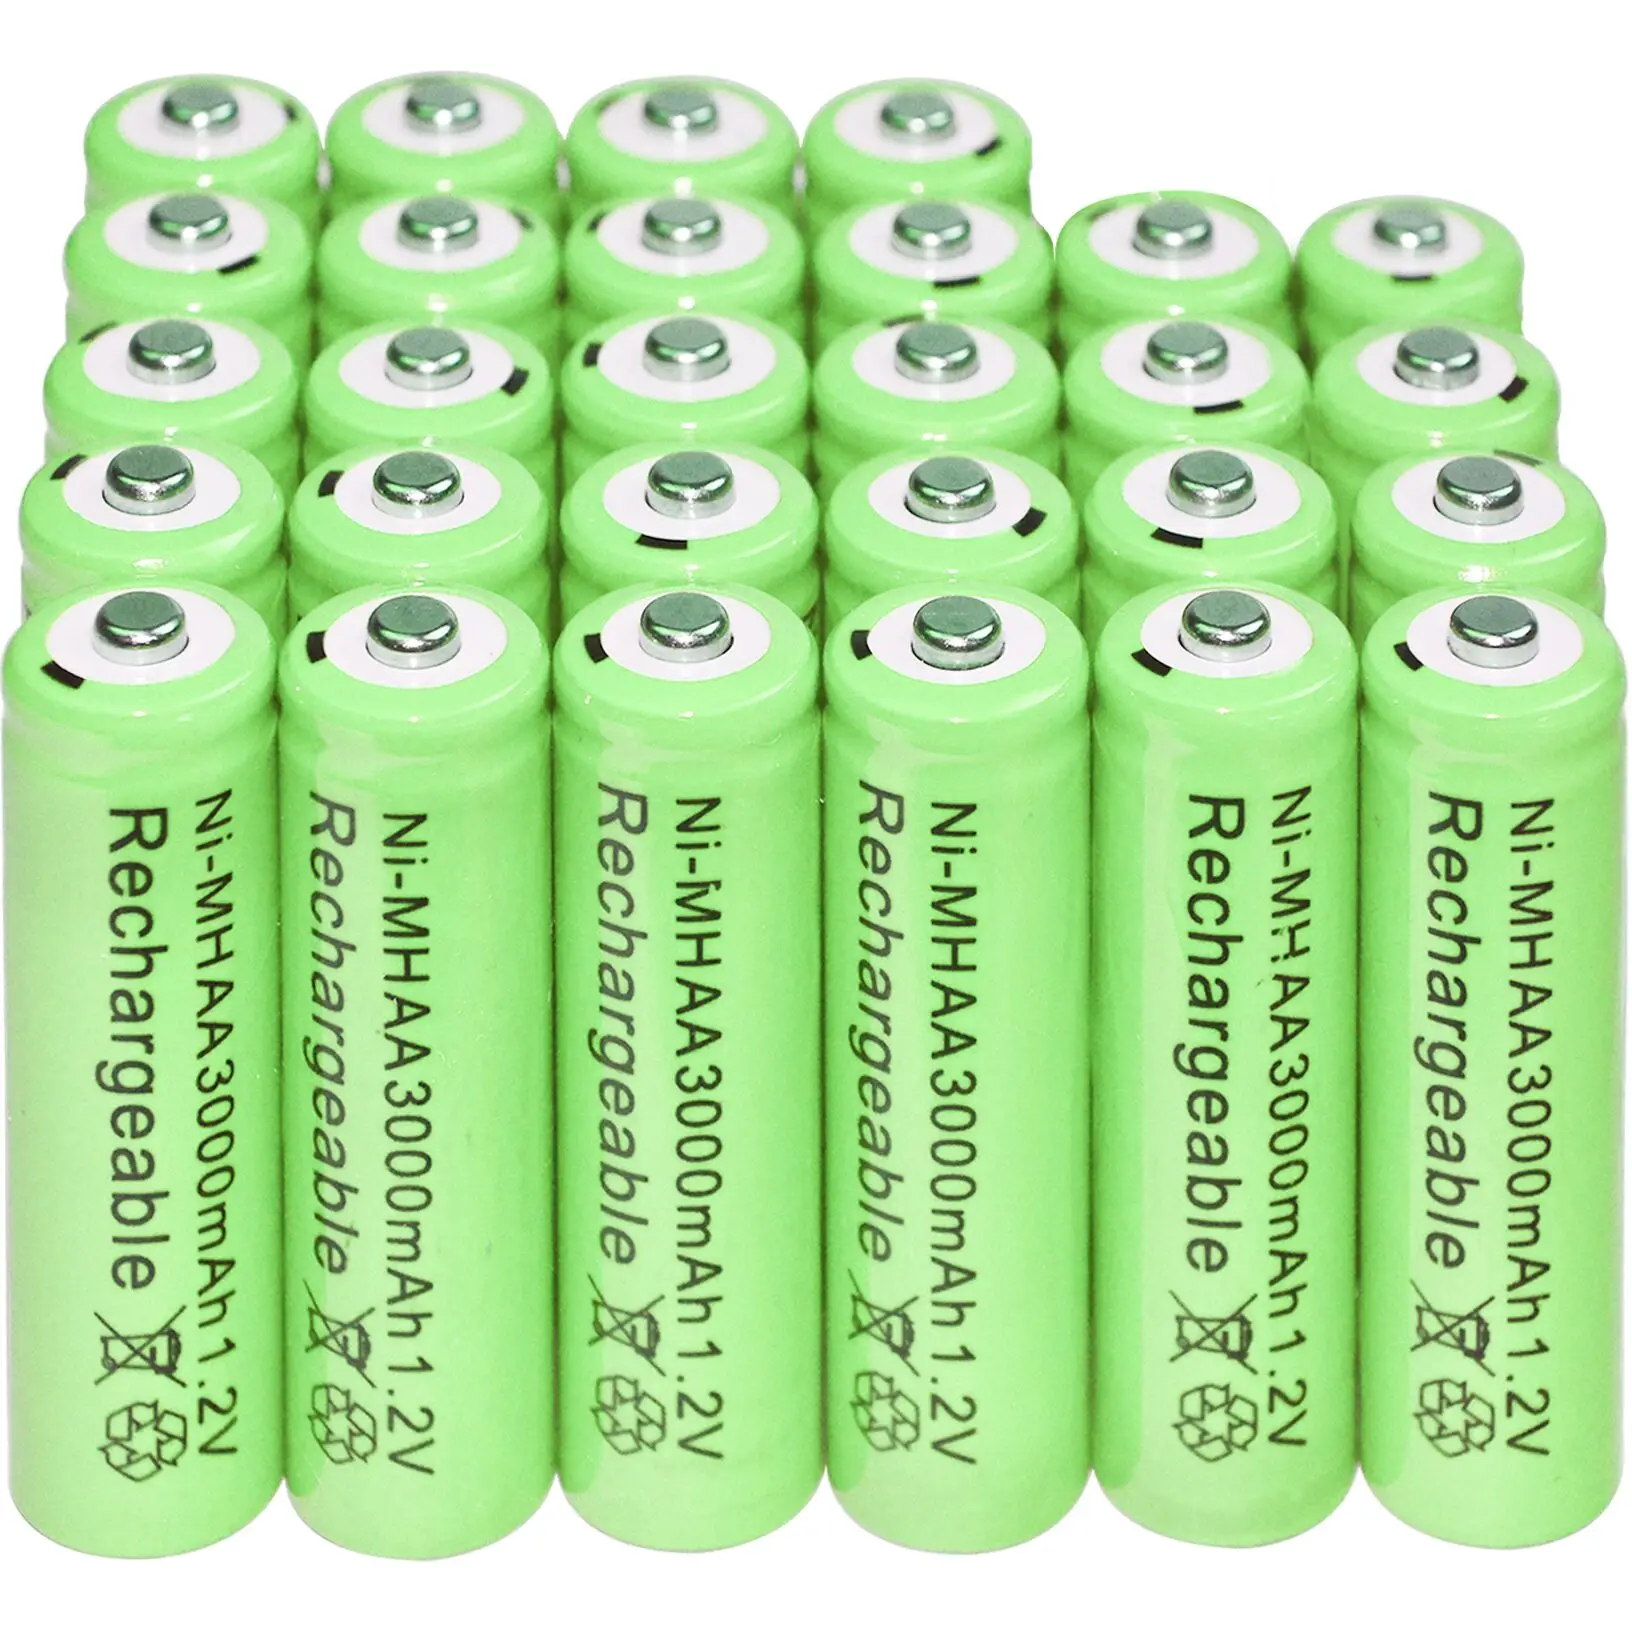 

Аккумуляторные батарейки AA 1,2 в, 3000 мА · ч, никель-металл-гидридный светильник, фонарь с подсветкой, бесплатная доставка